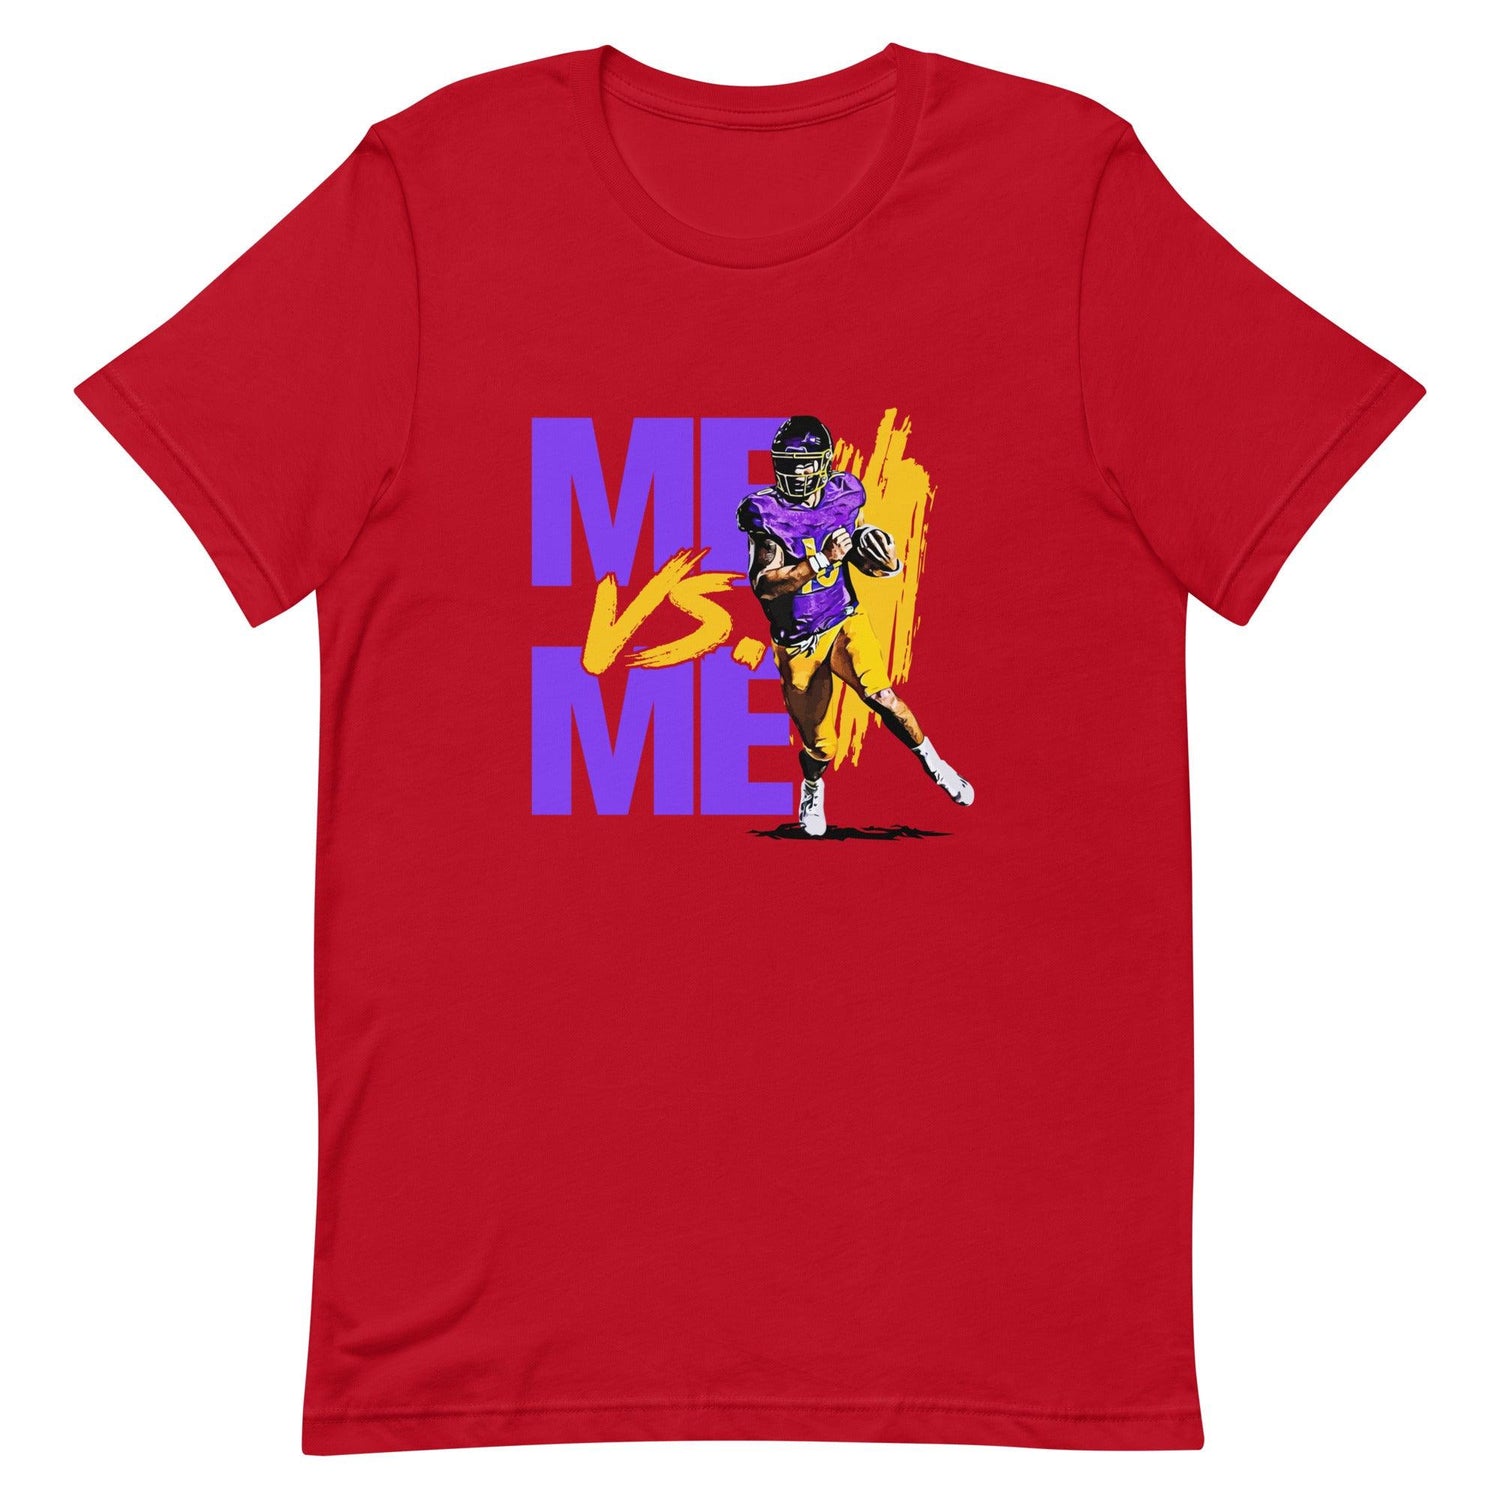 Mason Garcia "Me Vs. Me" t-shirt - Fan Arch